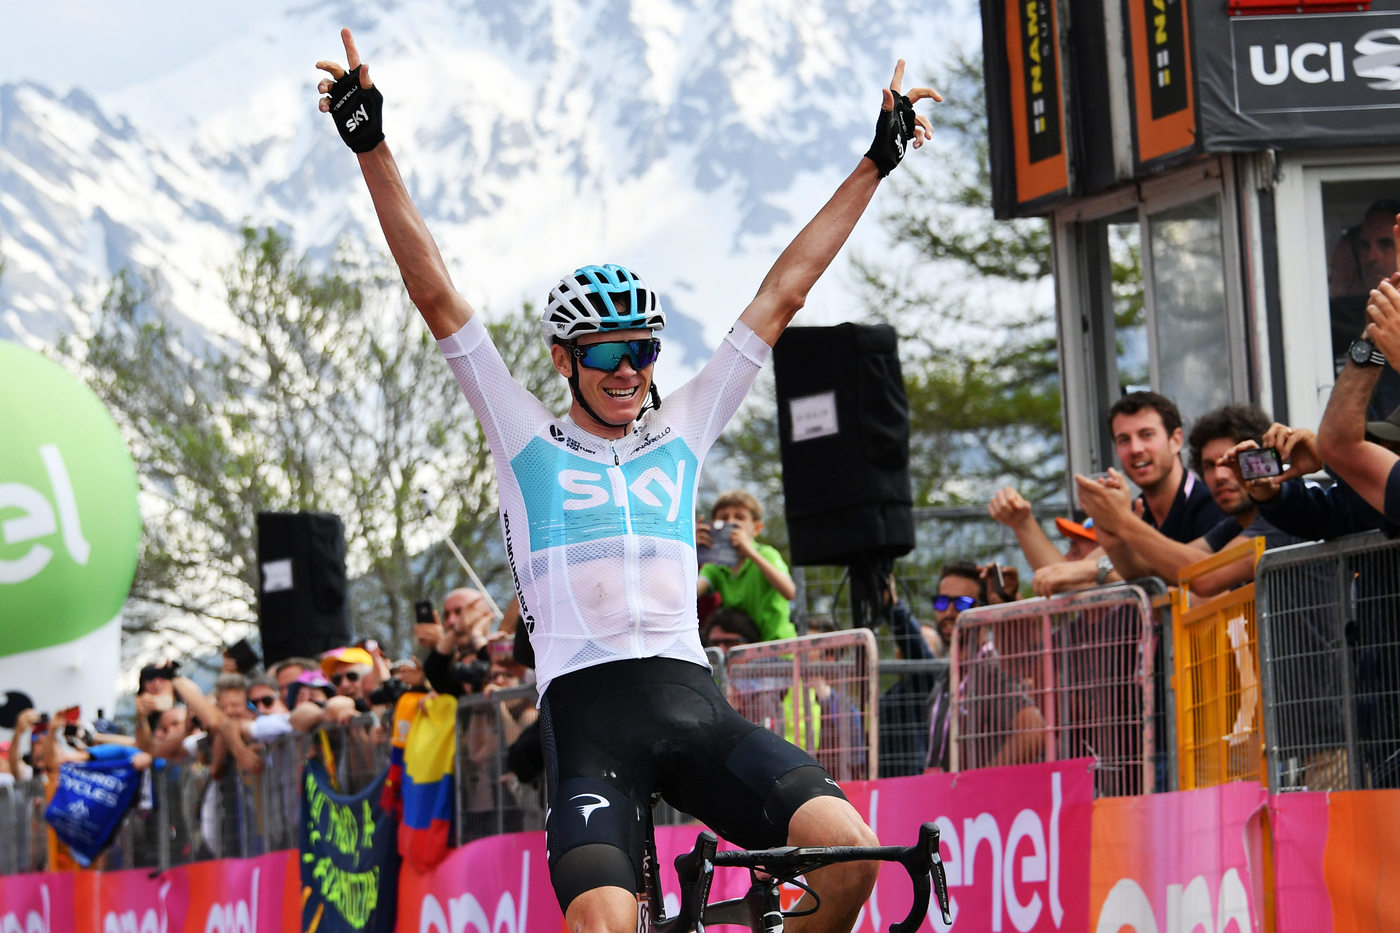 Analisi e pronostico Giro d'Italia 2018 favoriti tappa 20: Froome punta a coronare un'impresa d'altri tempi! Tutti i consigli per provare la cassa insieme al B-Lab!